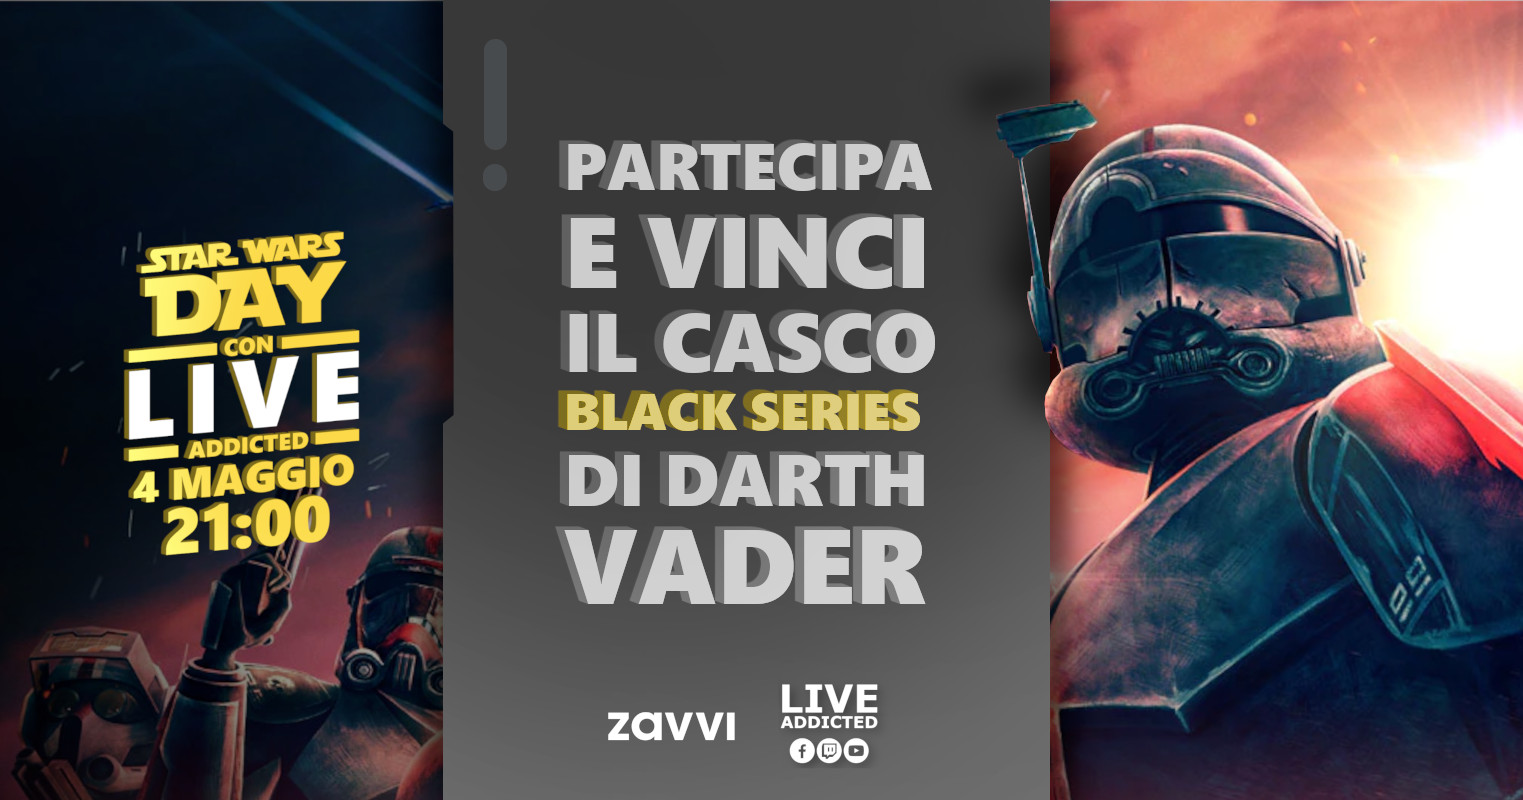 Star Wars Day: partecipa e vinci il casco black series di Darth Vader